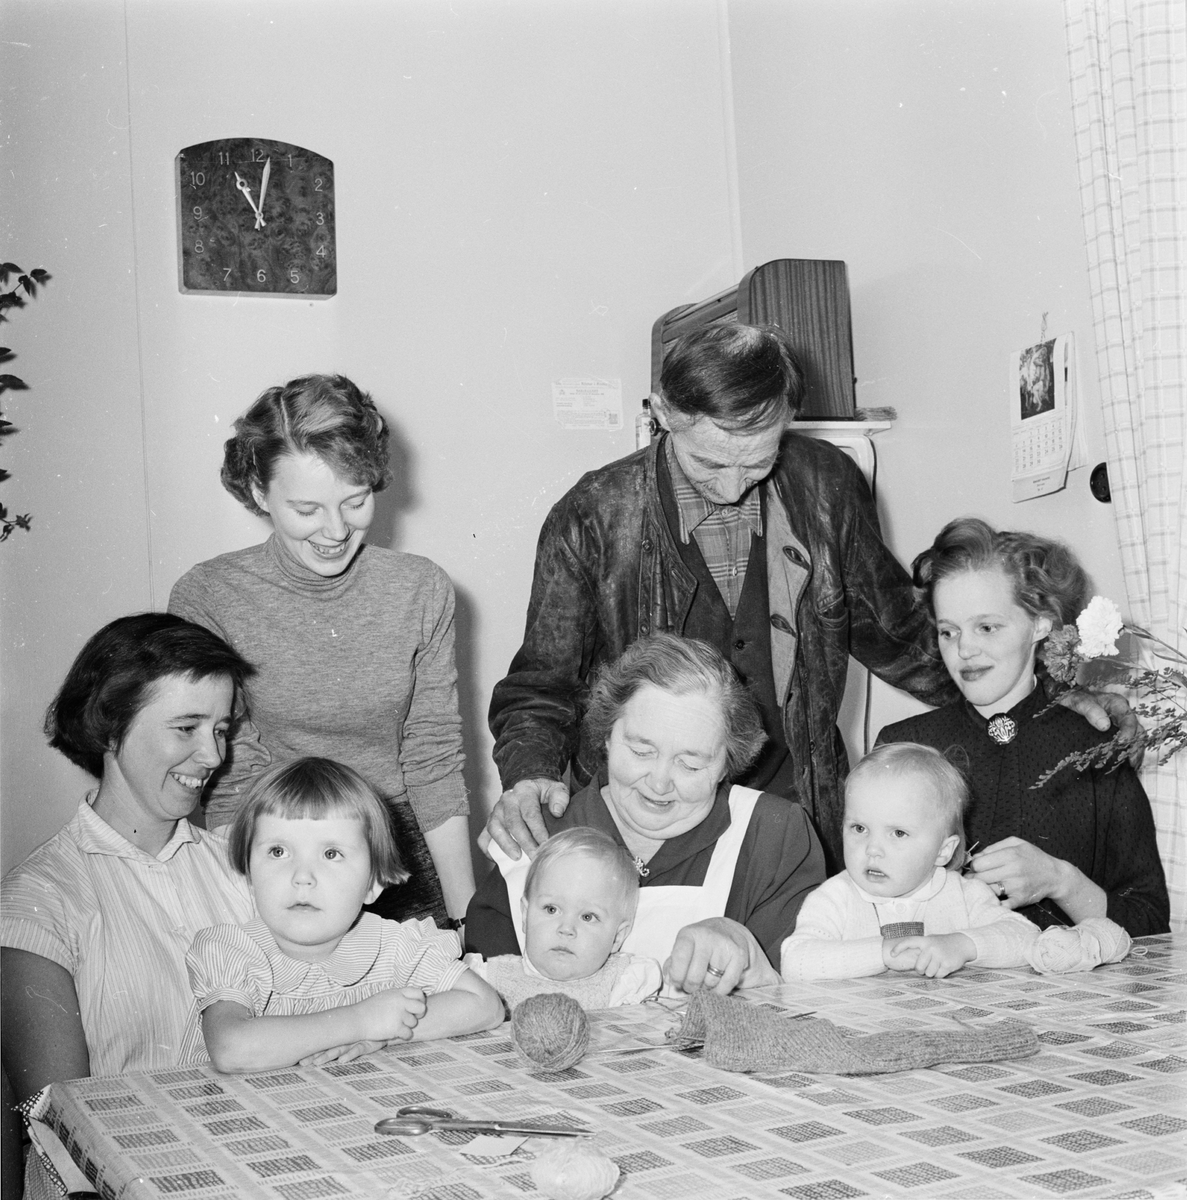 Lantbrukare Dina Eriksson, 1955 års mottagare av Insulanderska priset. Vid köksbordet med make, barn och barnbarn